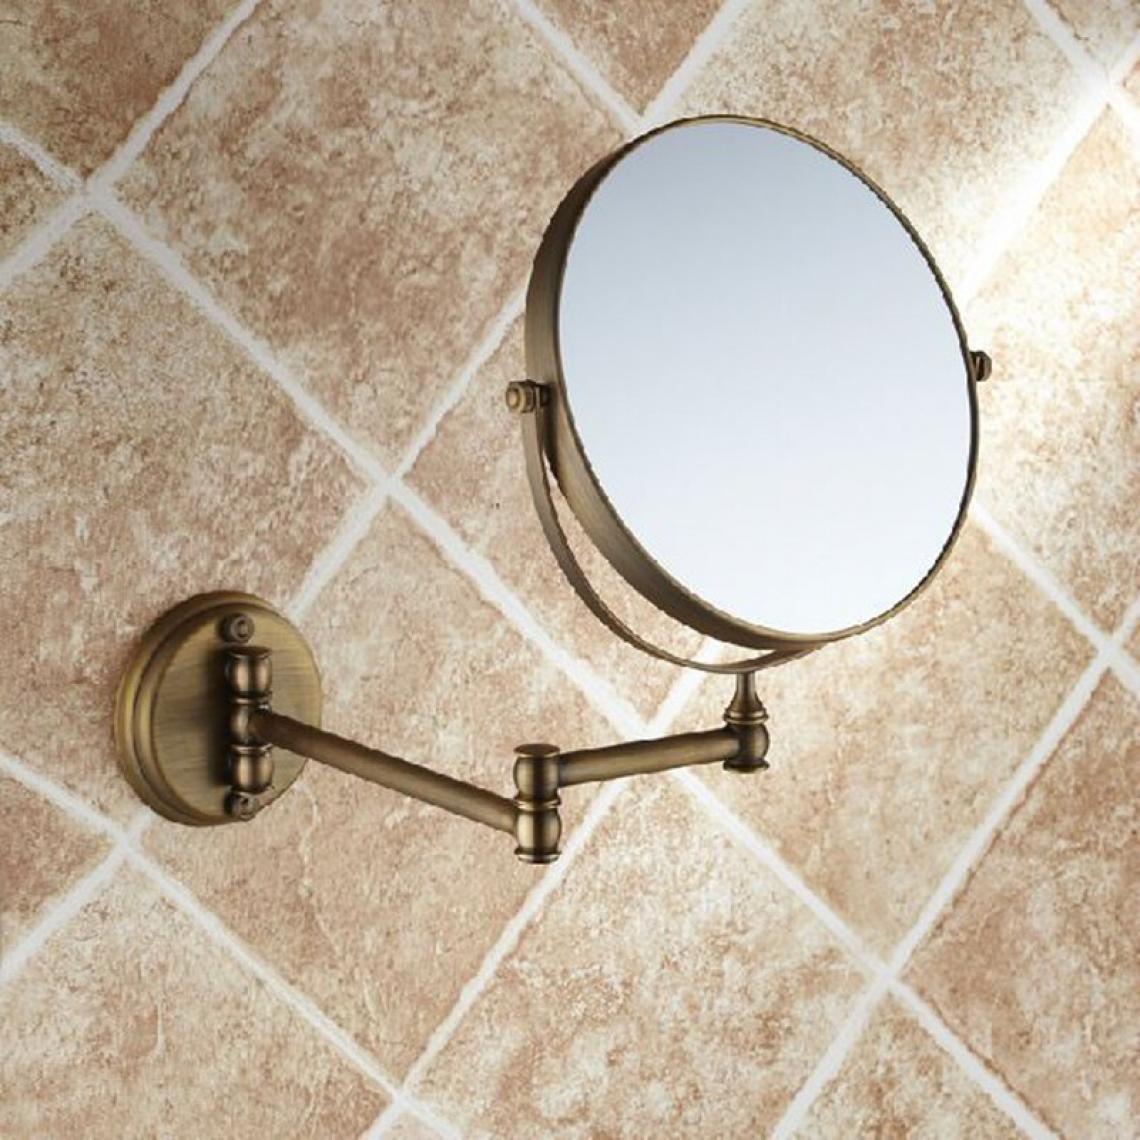 Universal - Miroir de salle de bains en cuivre antique rétractable 2 latéraux miroir mural de salle de bains 3 loupes miroir rond maquillage | miroir de salle de bains | miroir de salle de bains en cuivre miroir rond bain(Le cuivre) - Miroir de salle de bain